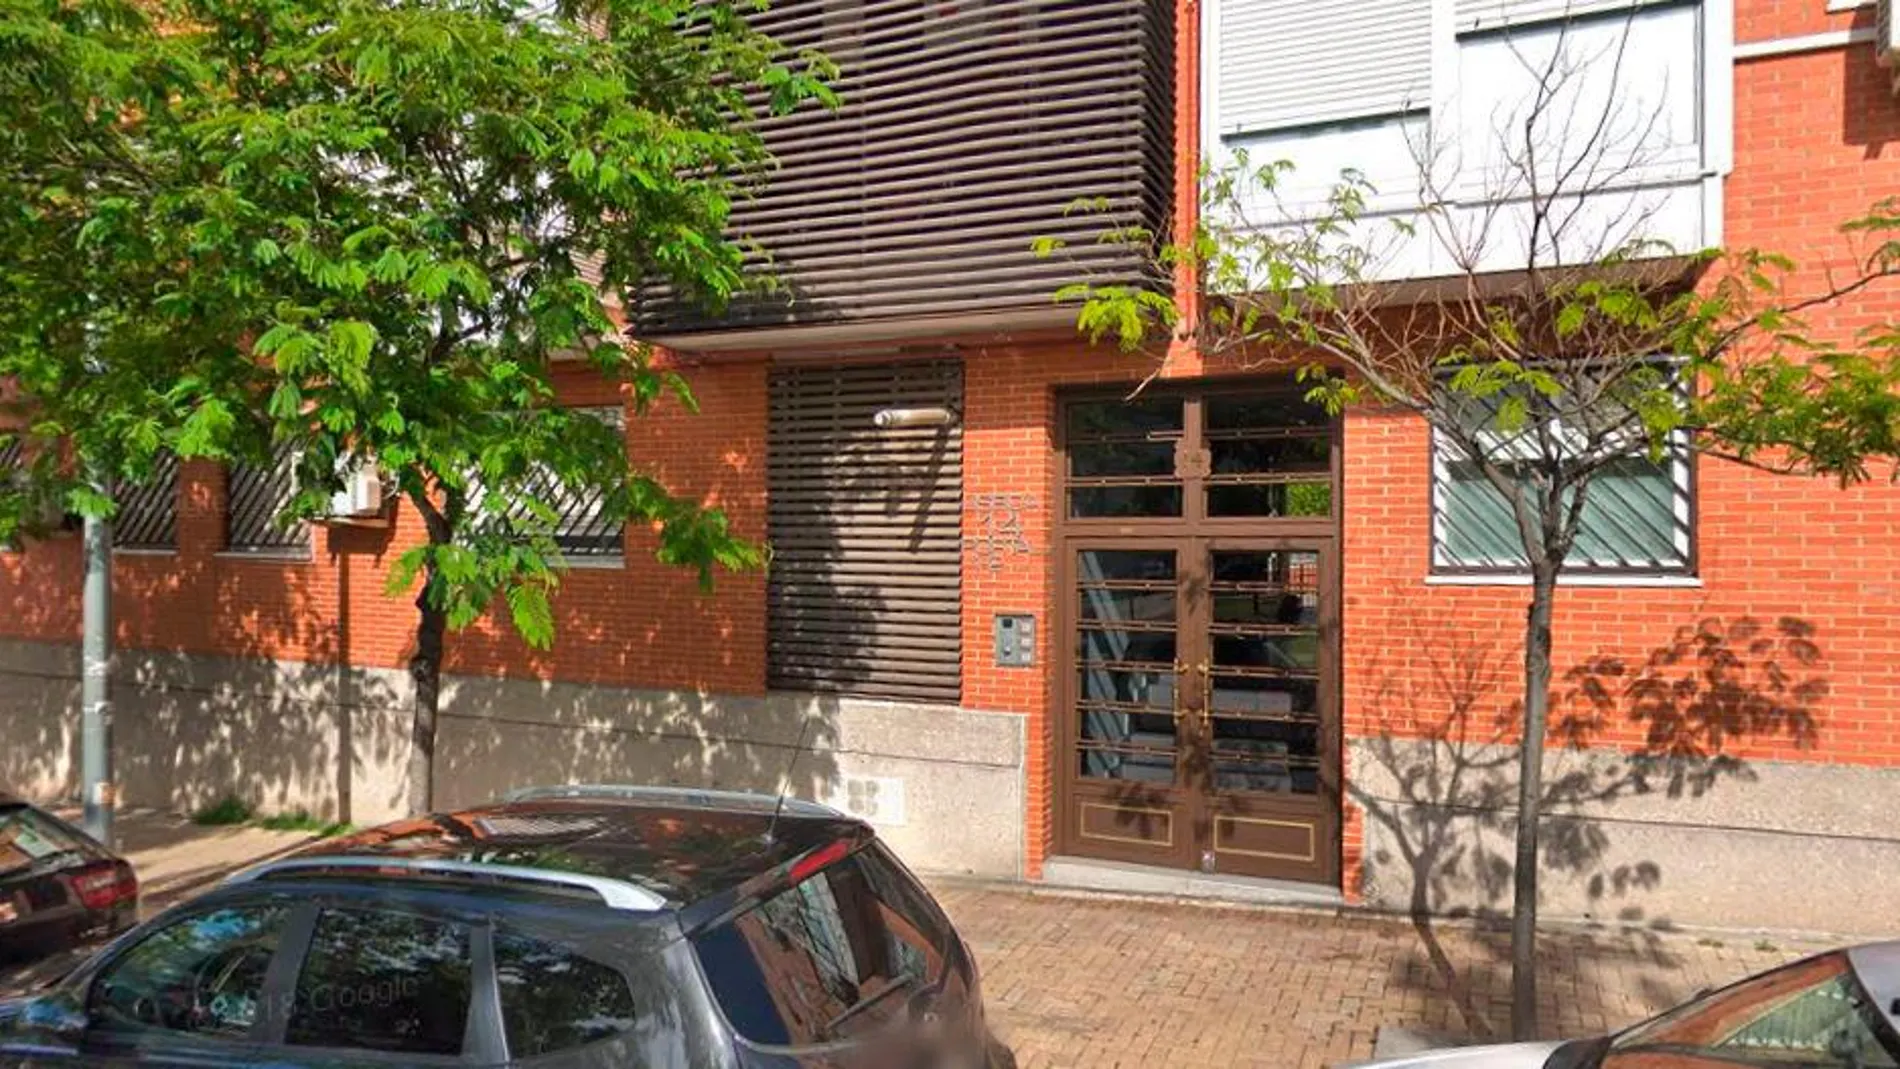 El hombre permanecía atrincherado en una vivienda de la calle Lisboa 14 del barrio de La Fortuna en Leganés